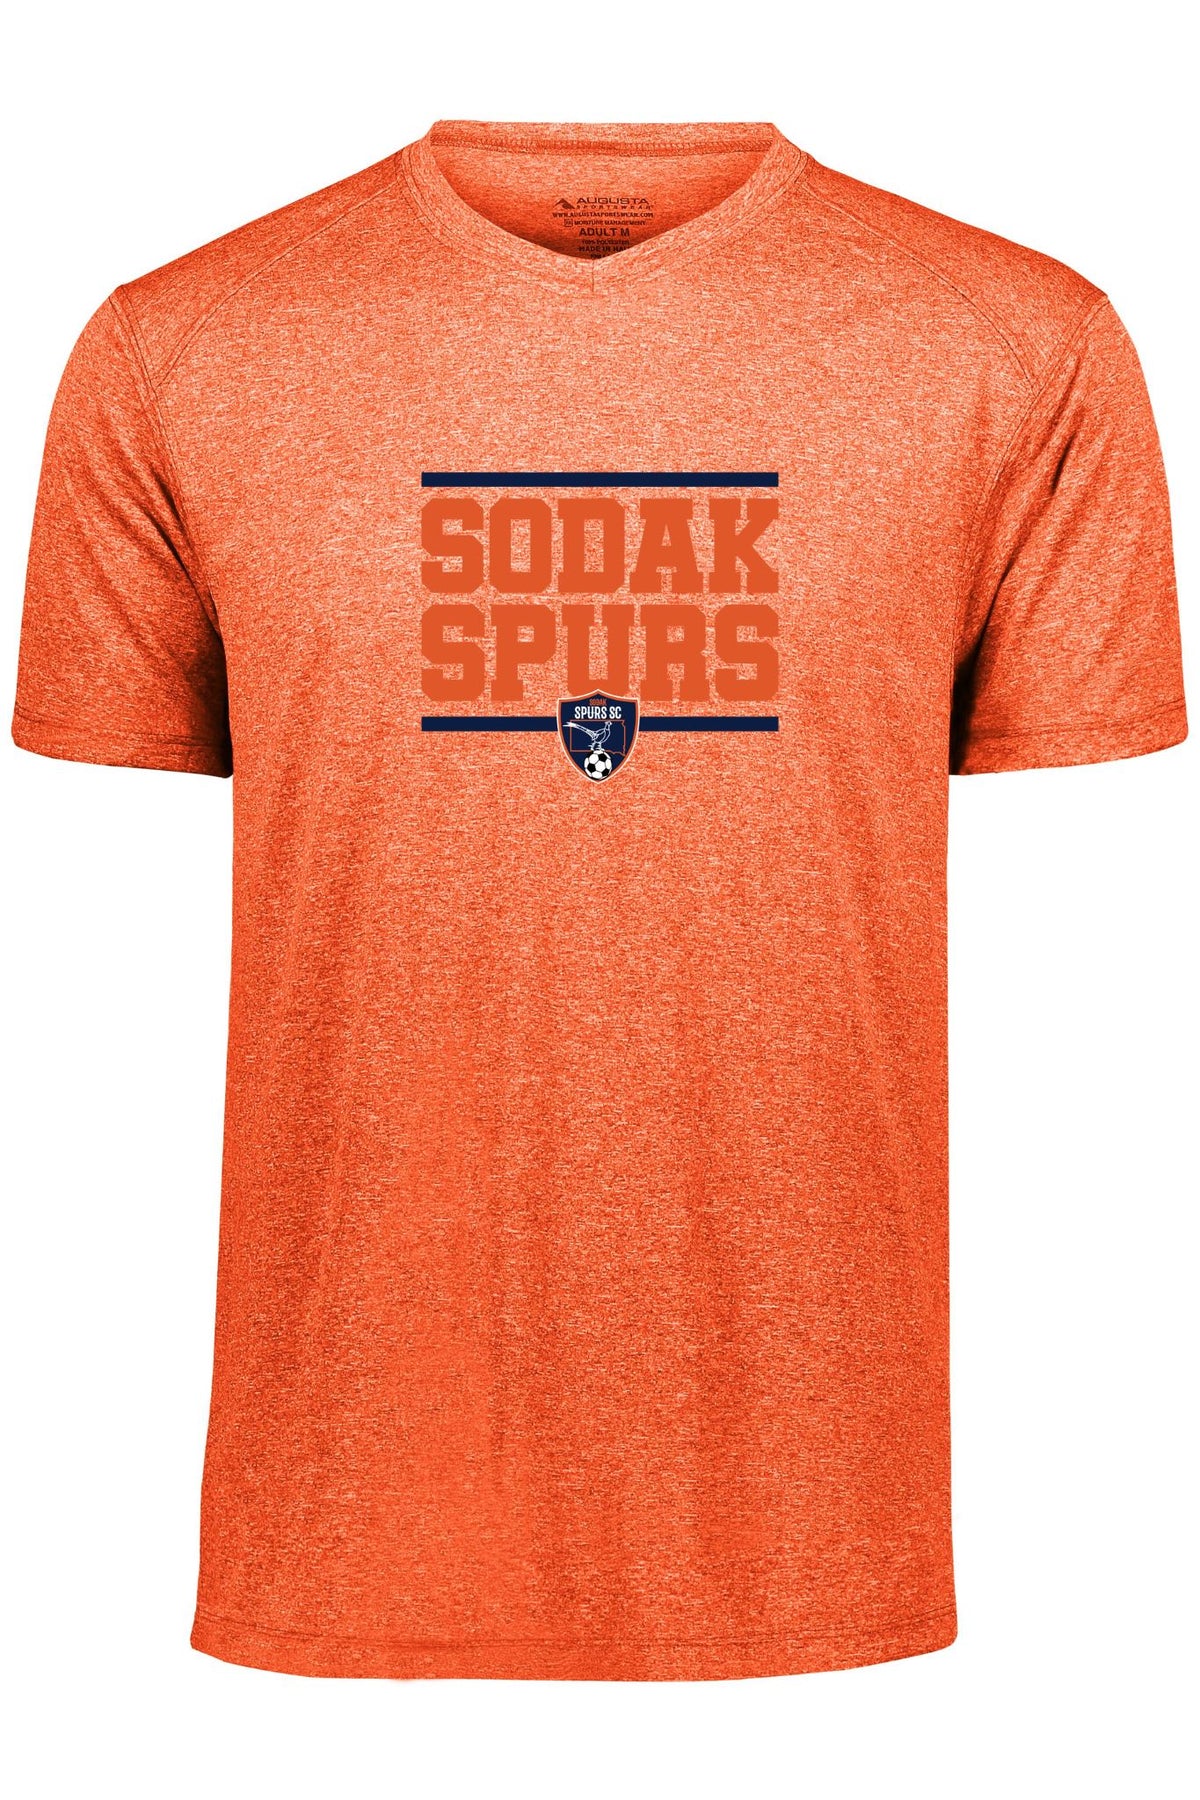 SoDak Youth Augusta Sportswear Tee | Retired Logo Goal Kick Soccer 